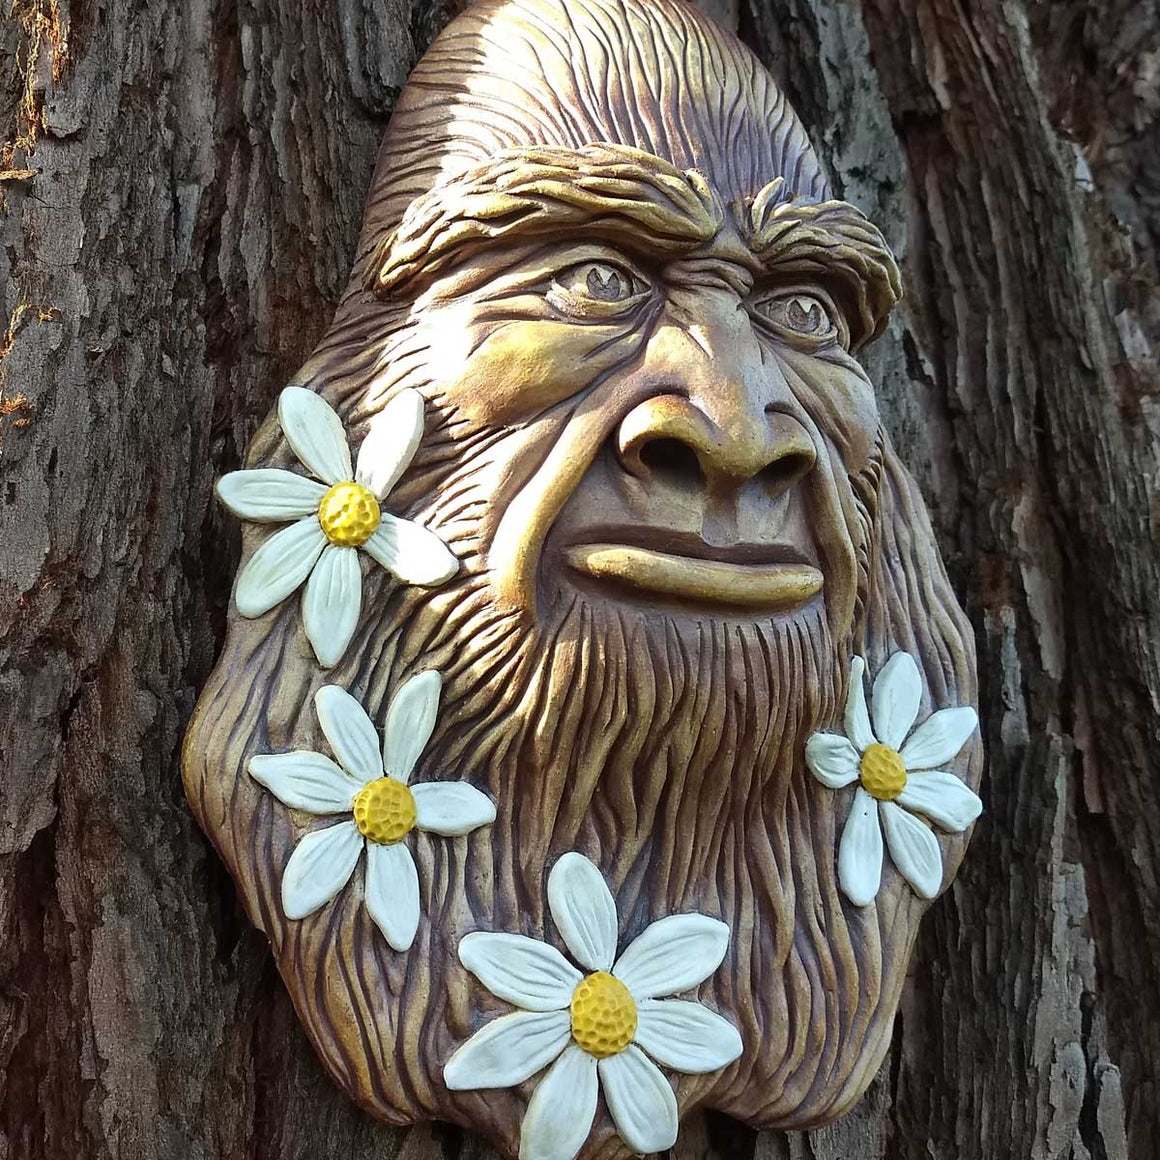 Bigfoot "Flower Beard" Sculpture